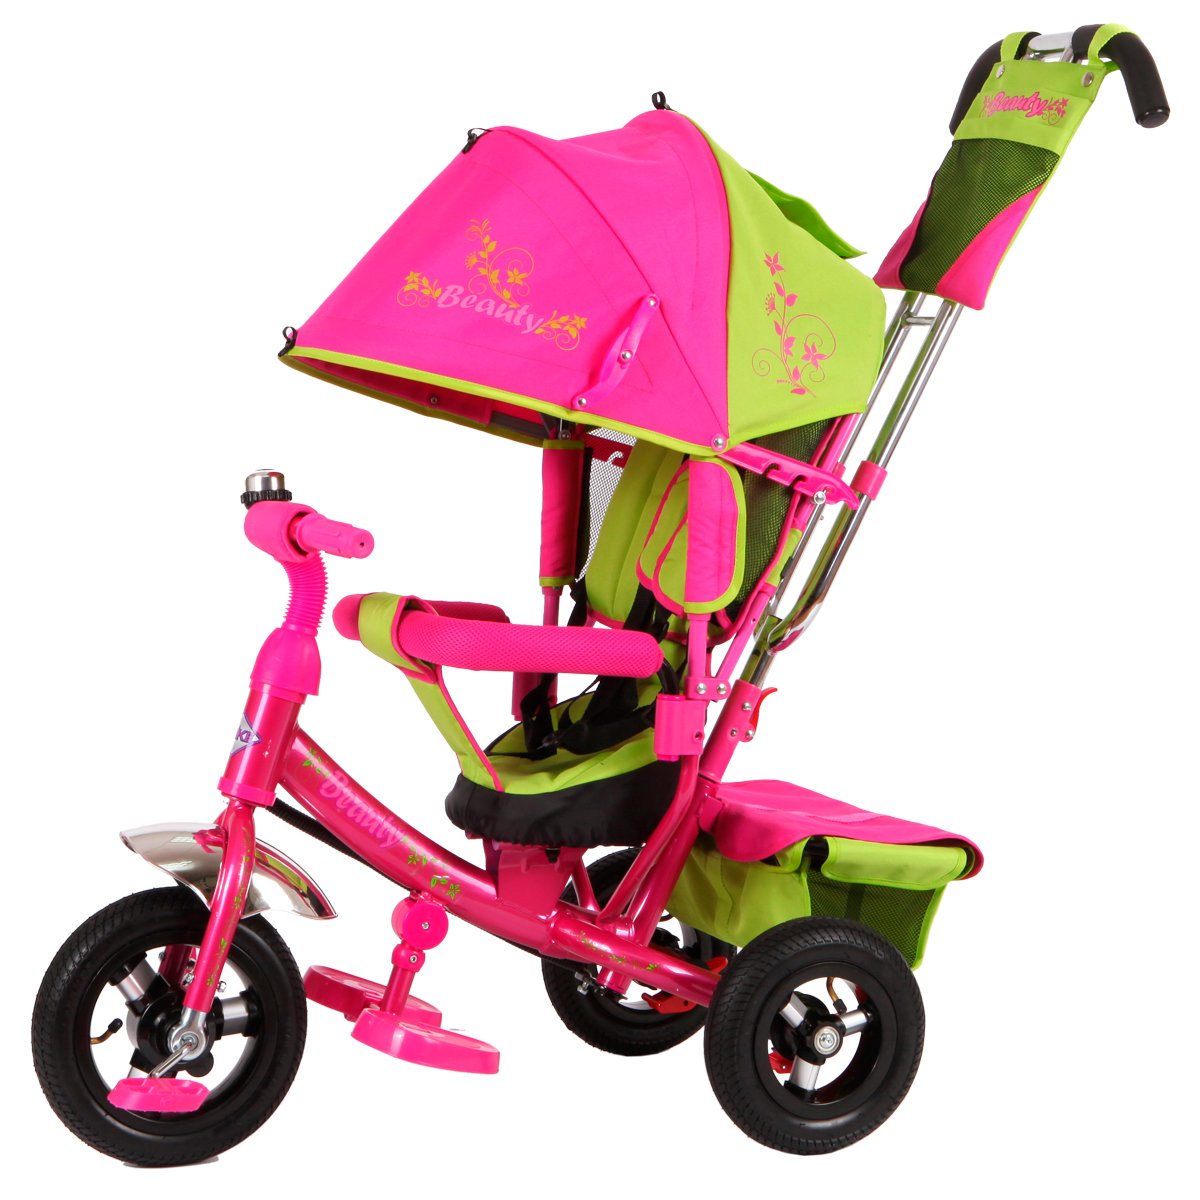 Велосипед с ручкой детский от 3 лет. Moby Kids Cosmo велосипед 3-колесный. Велосипед Beauty ba2 Trike. Трехколесный велосипед Beauty ba2. Трехколесный велосипед с ручкой кари зеленый xg6631-t16 61204010.